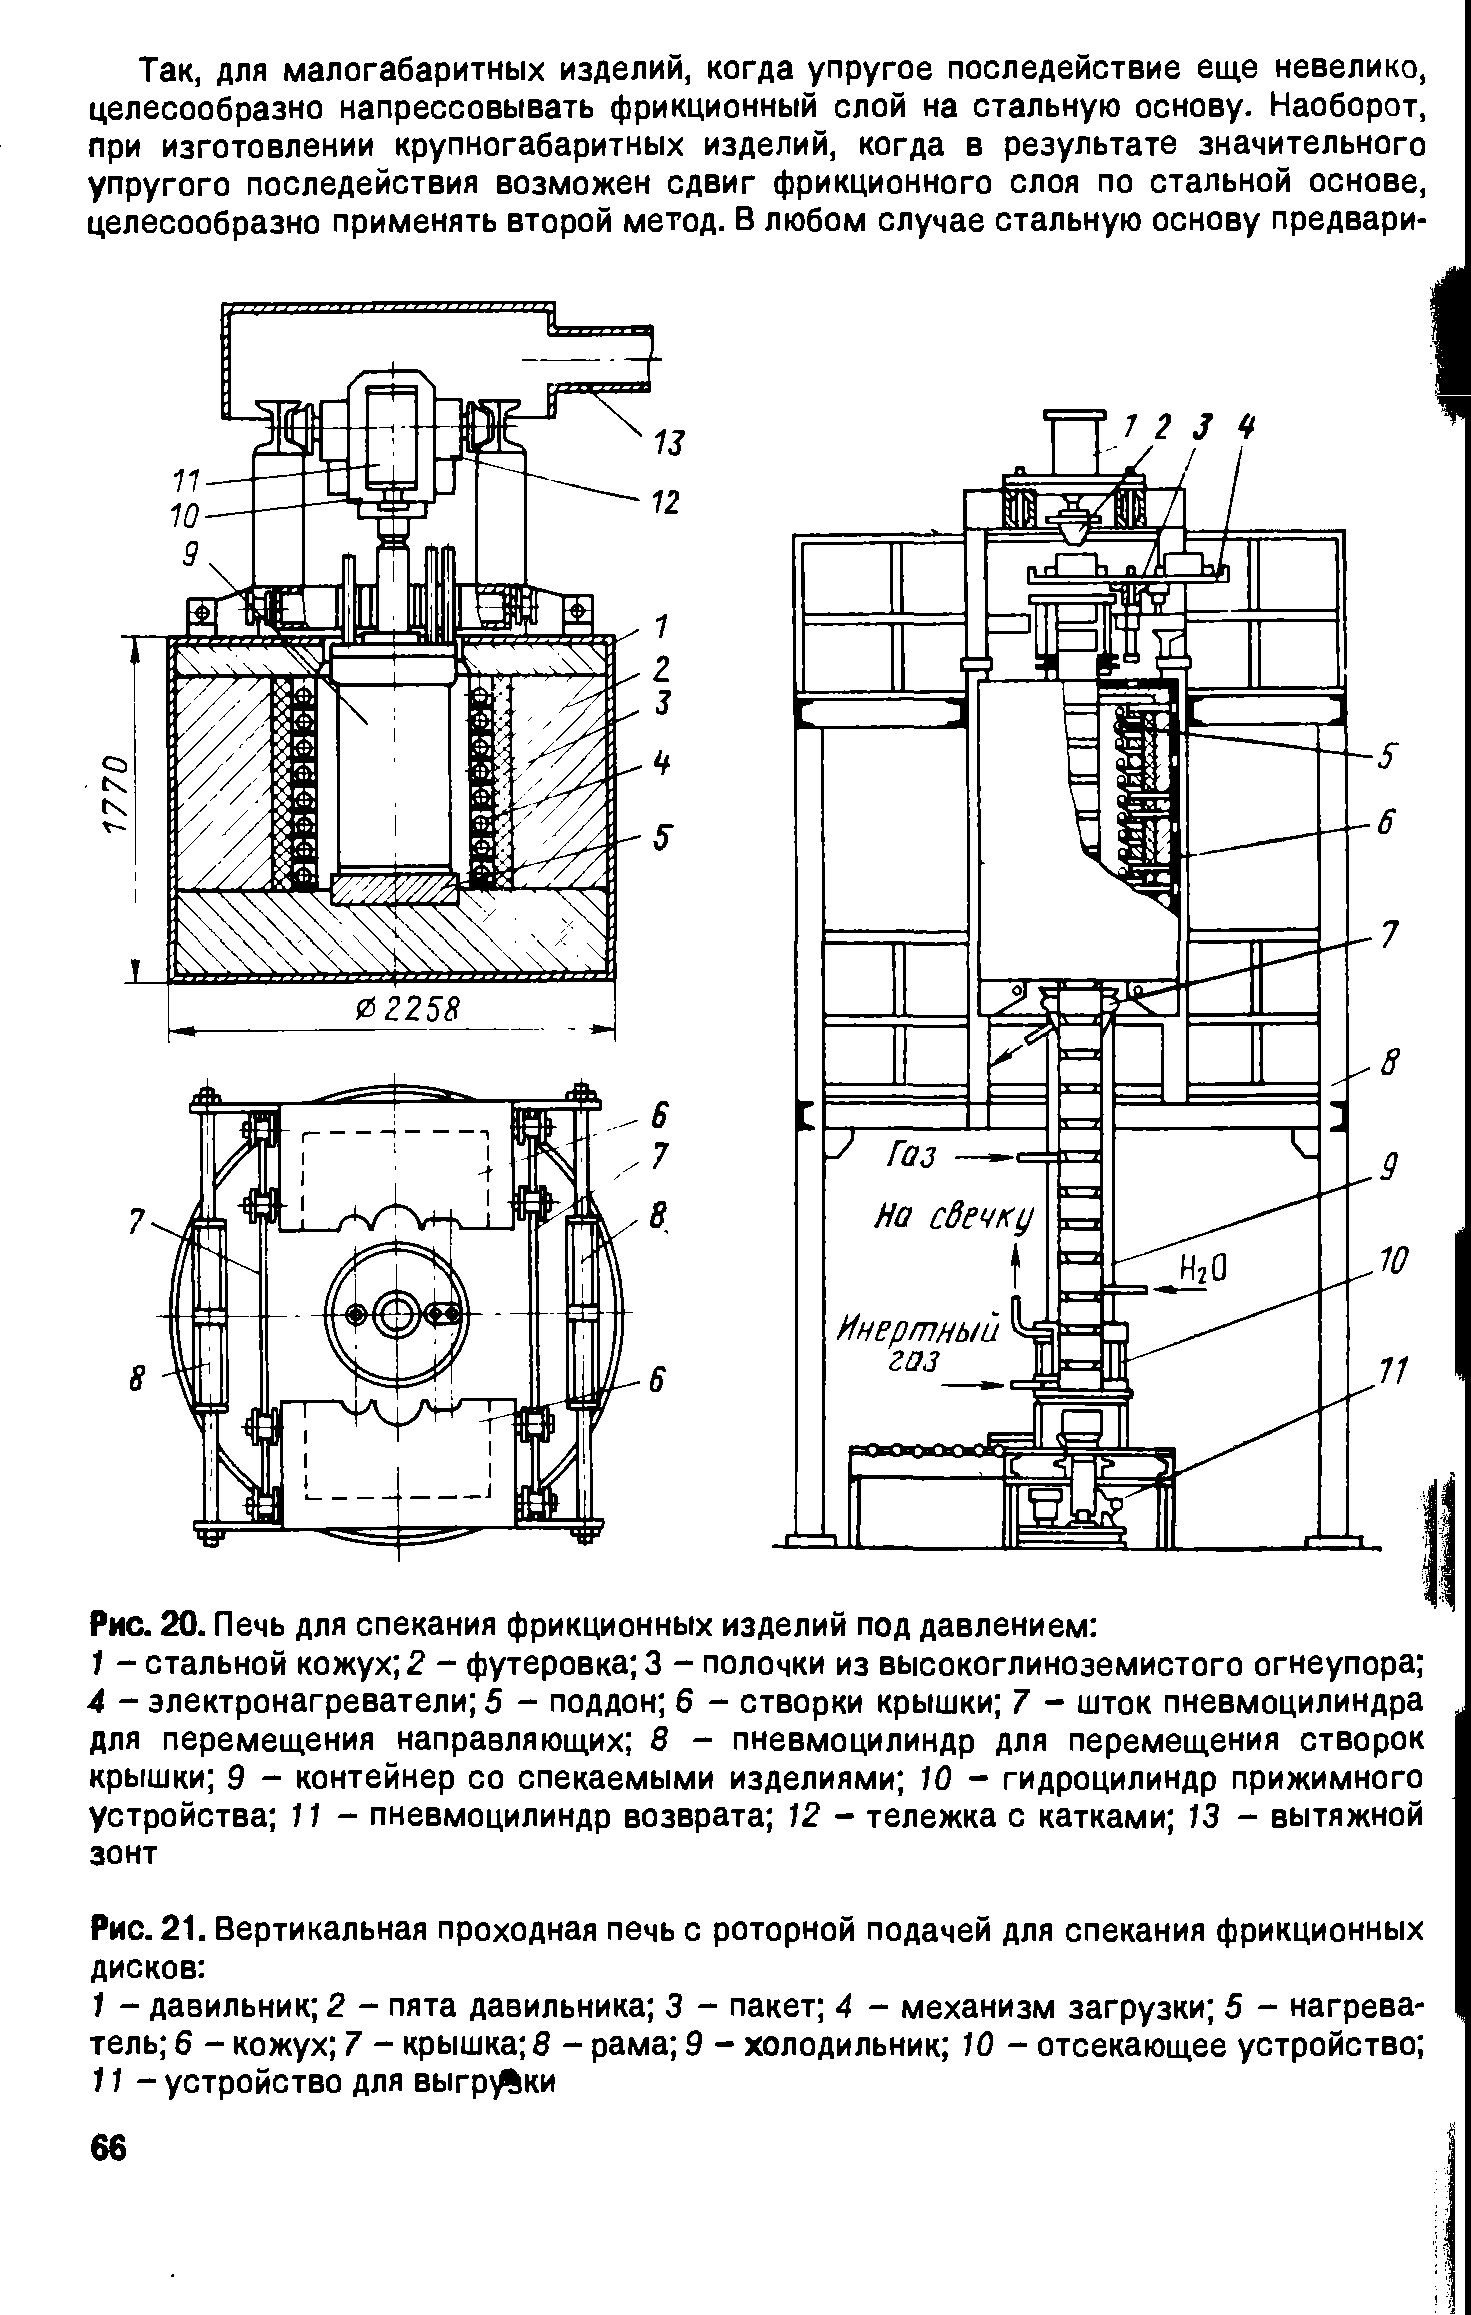 Рис. 21. Вертикальная проходная печь с роторной подачей для спекания фрикционных дисков 
